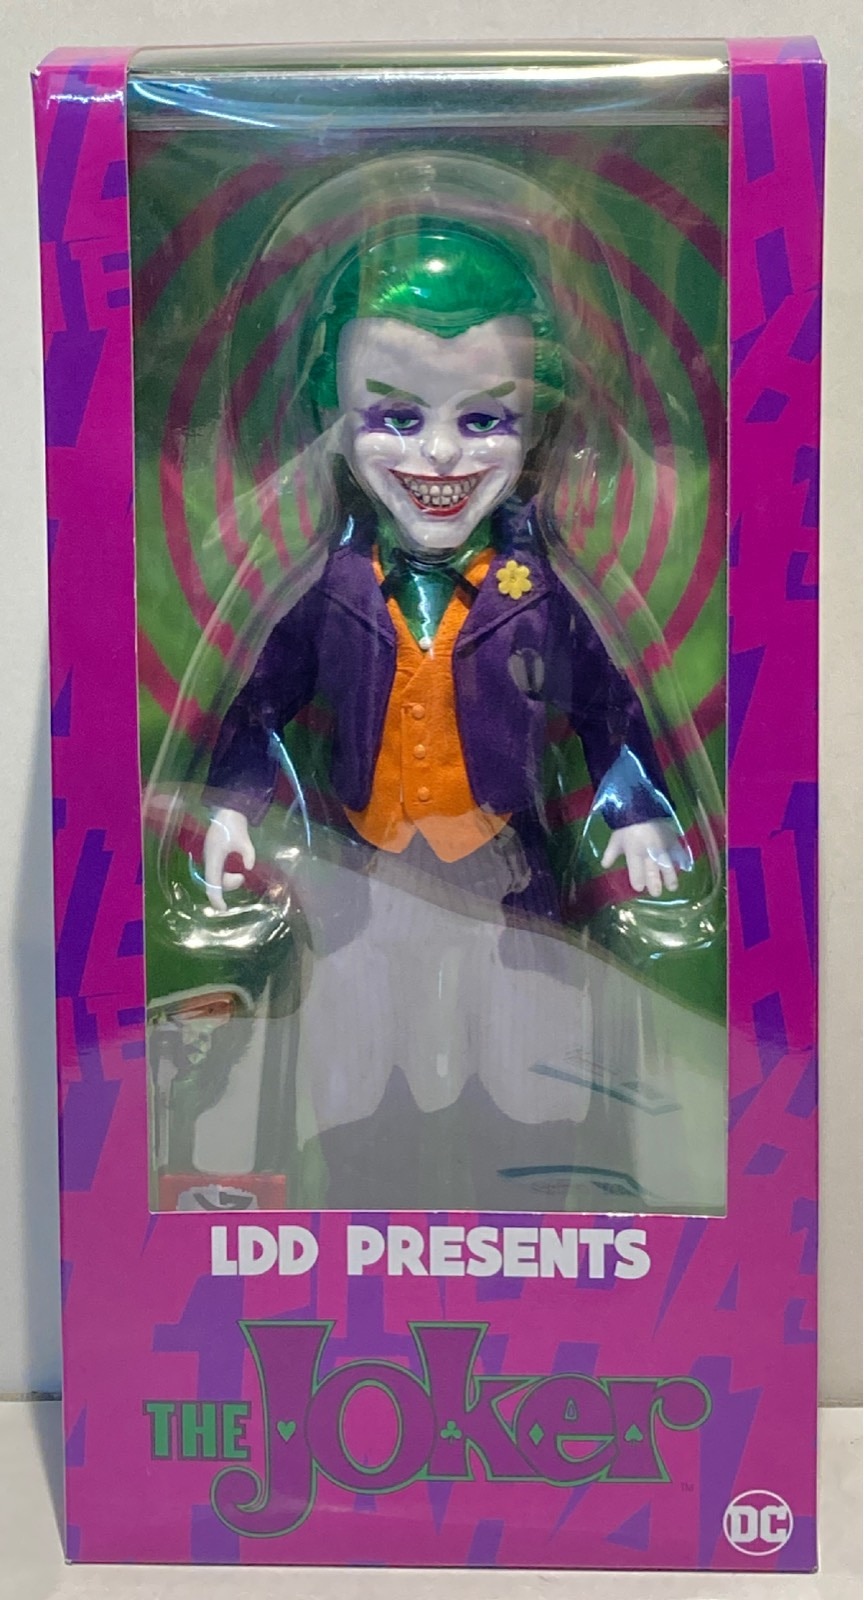 Mezco Living Dead Dolls Presents The Joker DC Comics IN STOCK 